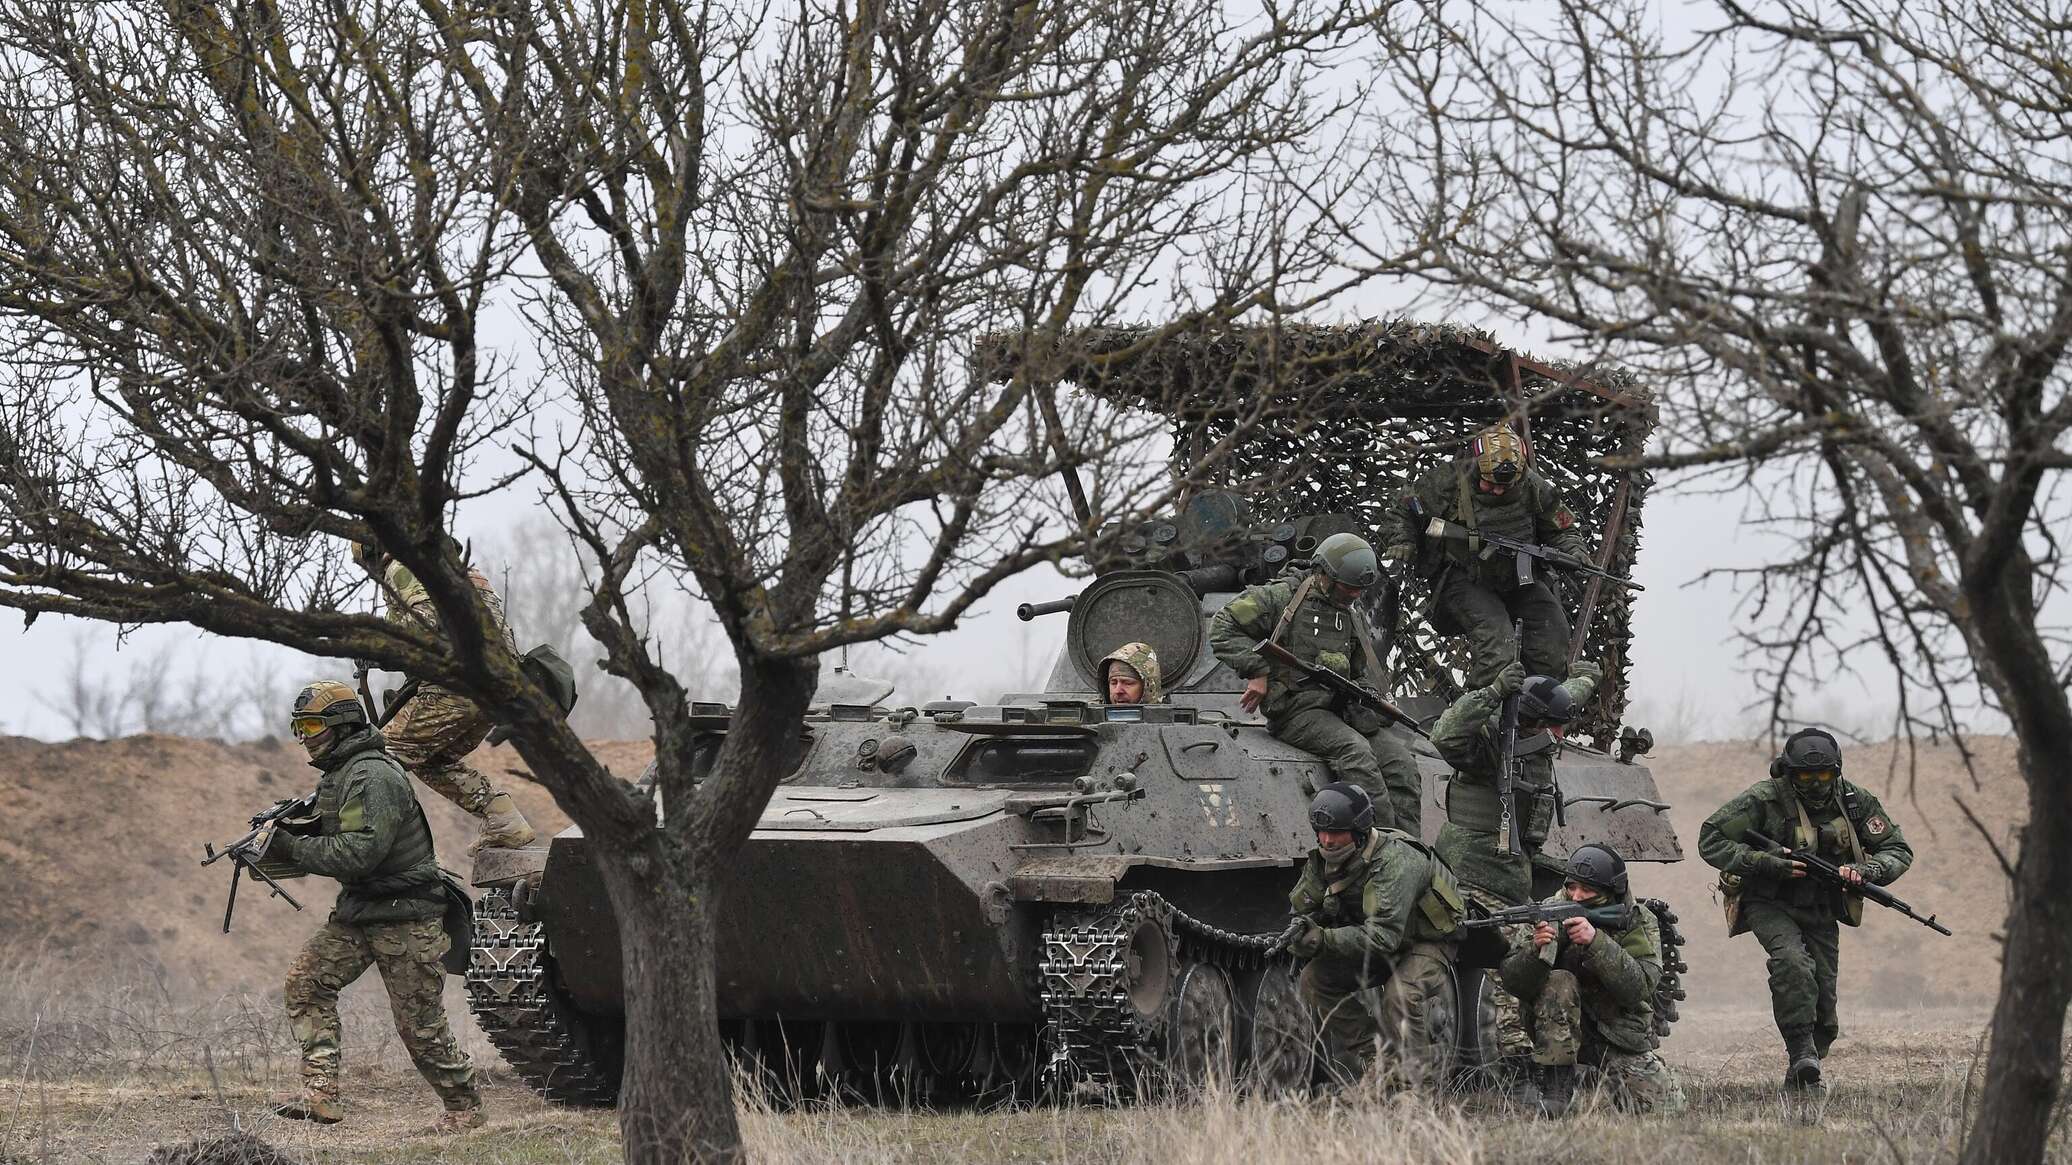 مصدر لـ"سبوتنيك": القوات المسلحة الروسية تحيد مئات الجنود الأوكرانيين في تشوغوييف